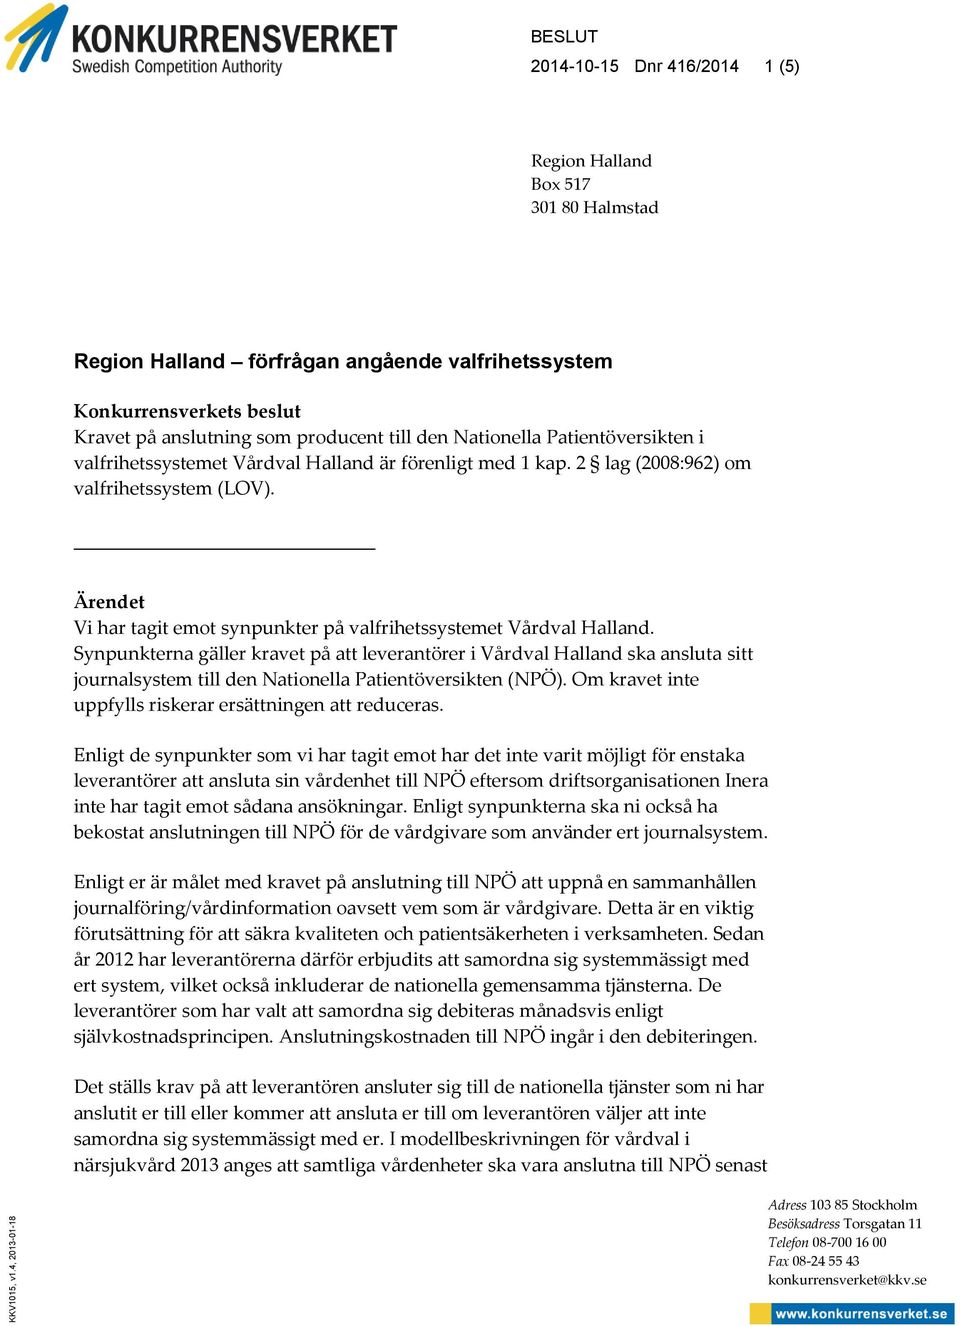 producent till den Nationella Patientöversikten i valfrihetssystemet Vårdval Halland är förenligt med 1 kap. 2 lag (2008:962) om valfrihetssystem (LOV).